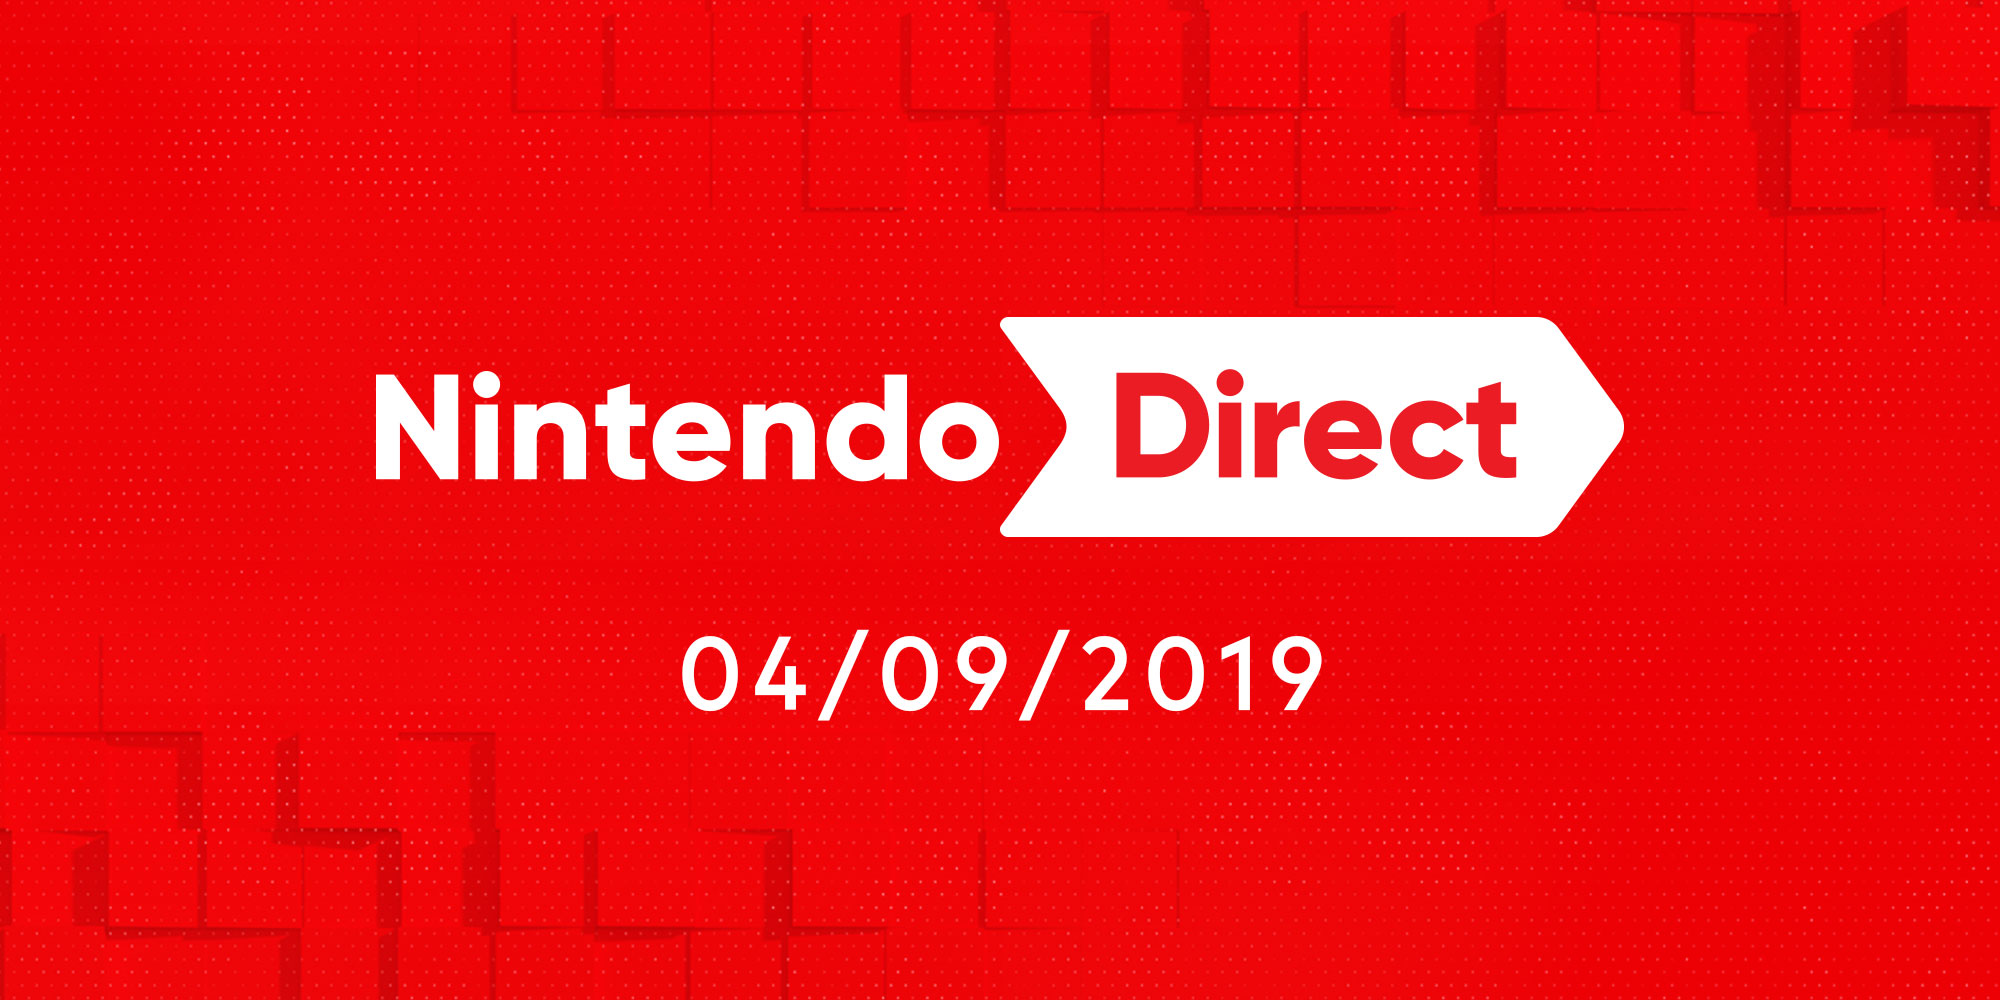 Nova Nintendo Direct revela Xenoblade Chronicles: Definitive Edition, Overwatch Legendary Edition e muitos mais para a Nintendo Switch!